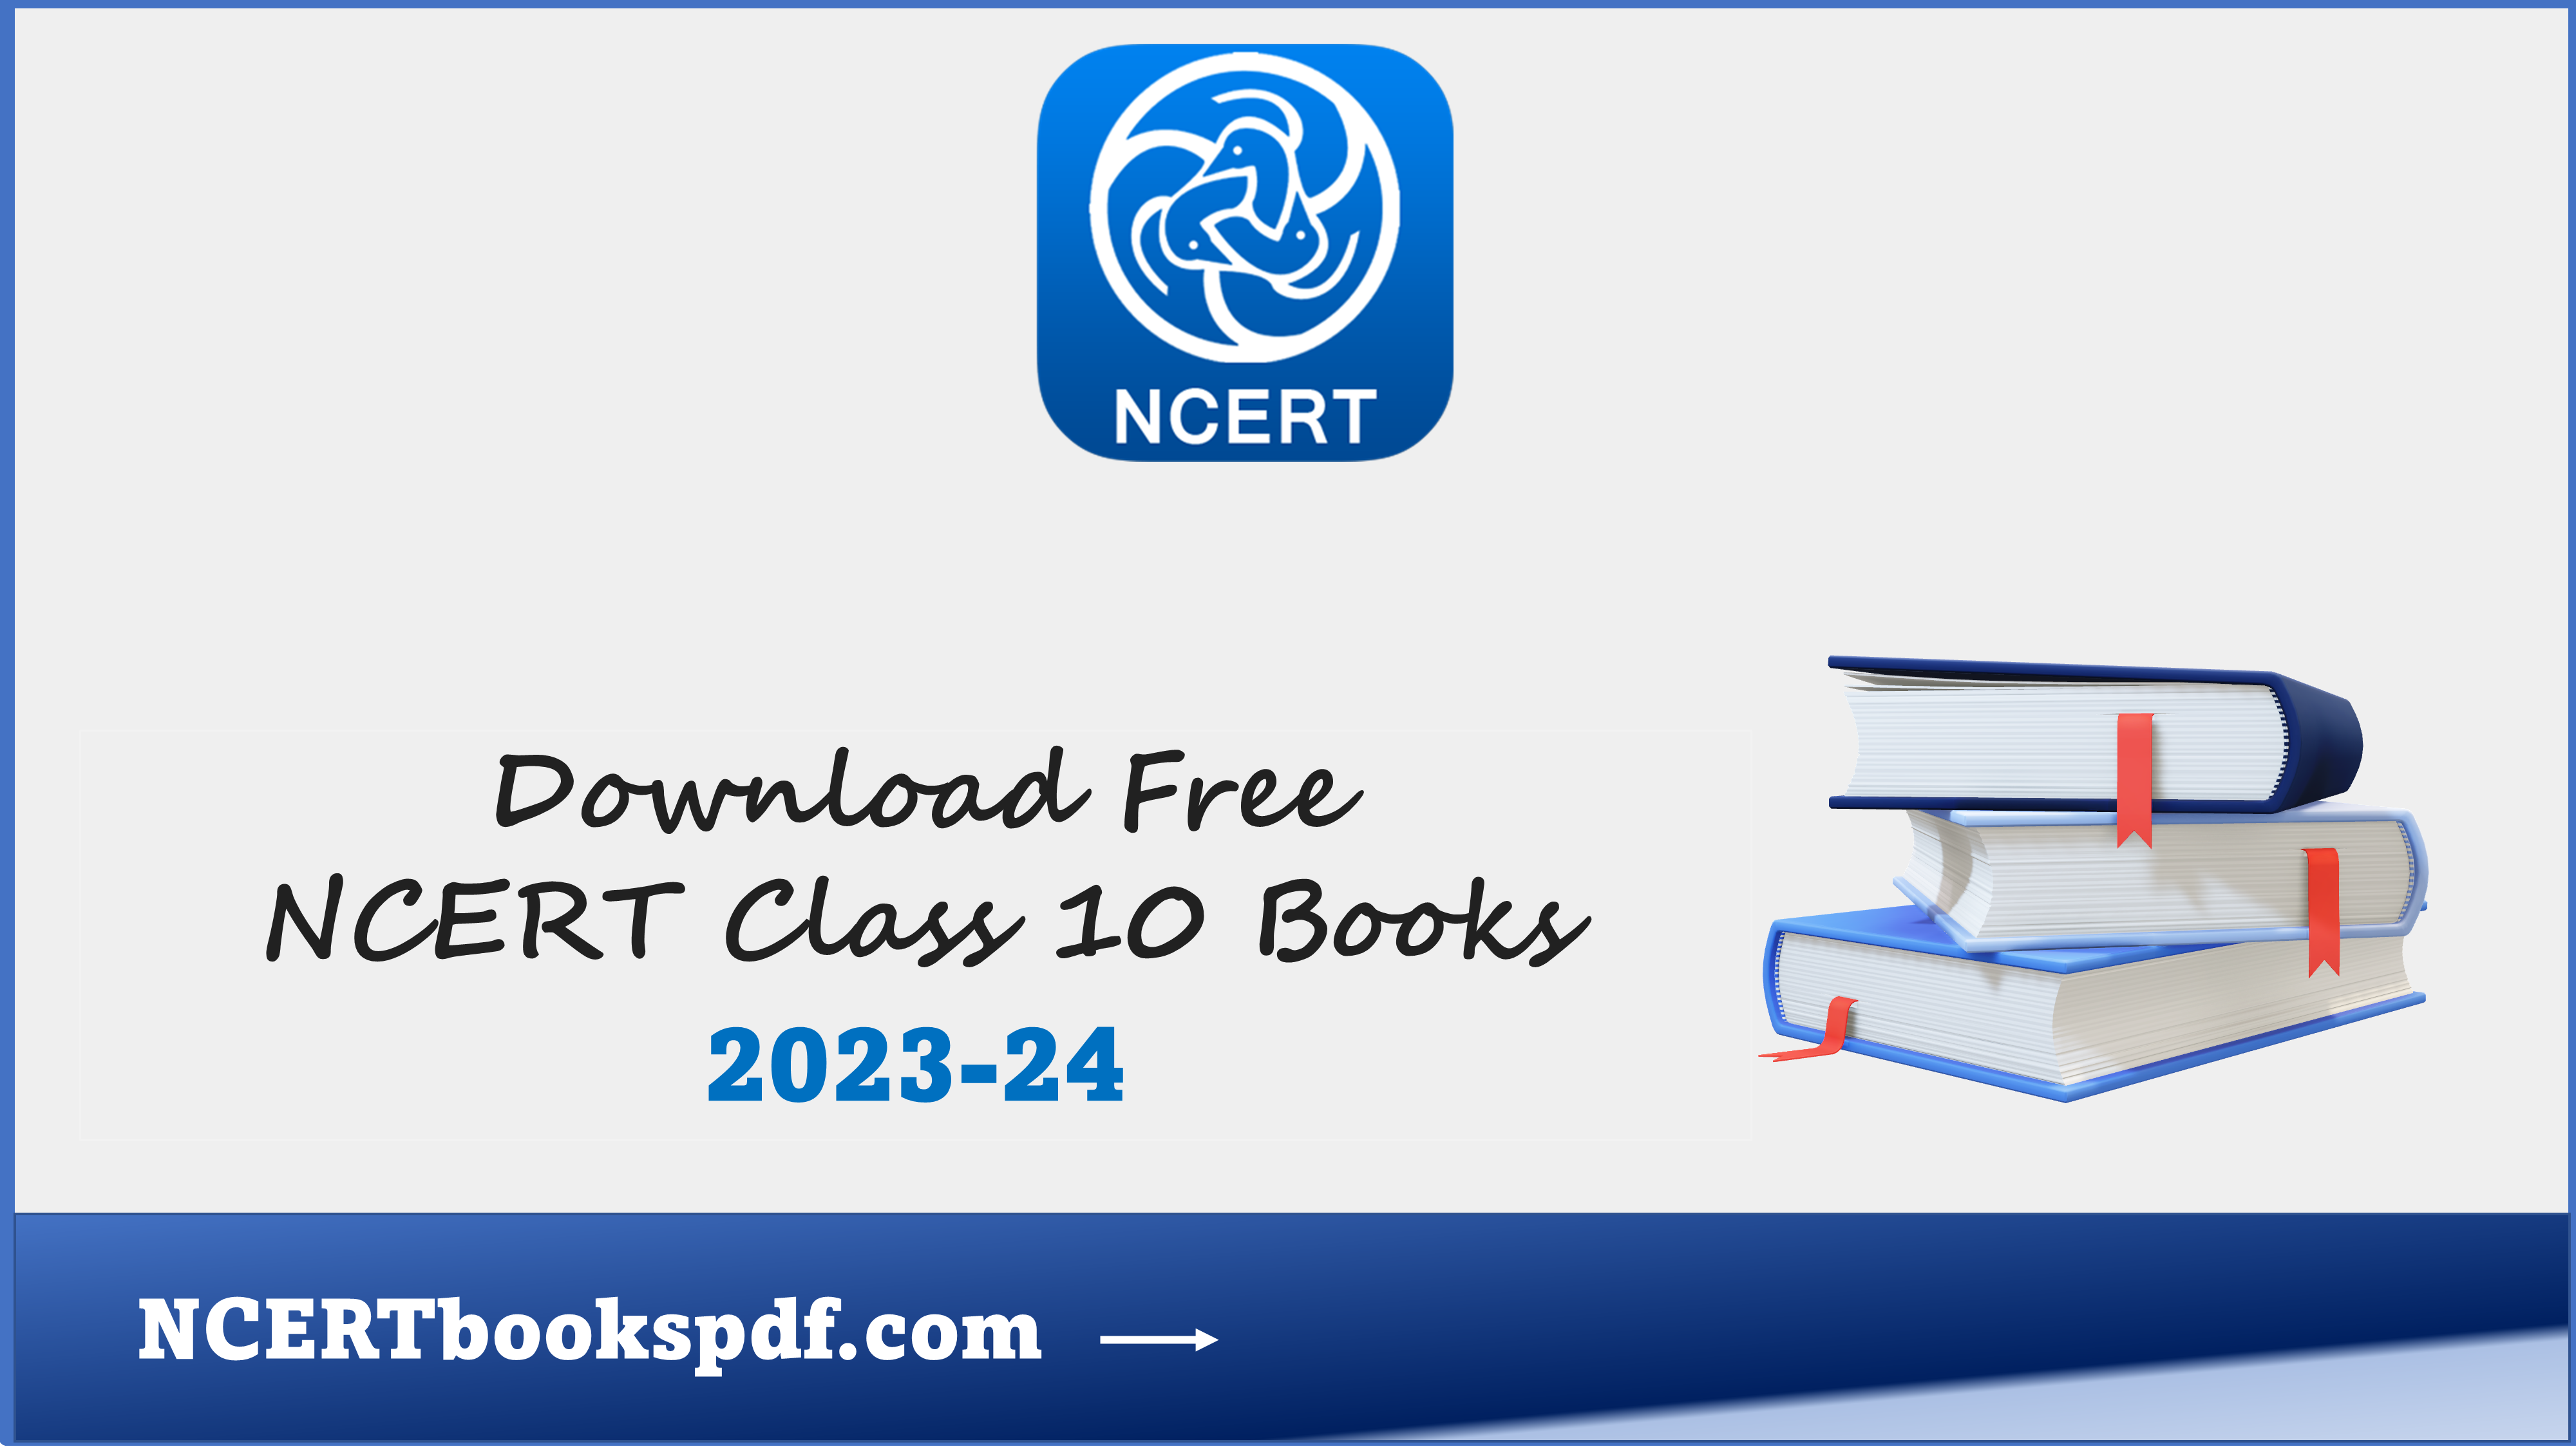 NCERT BOOKS CLASS 11